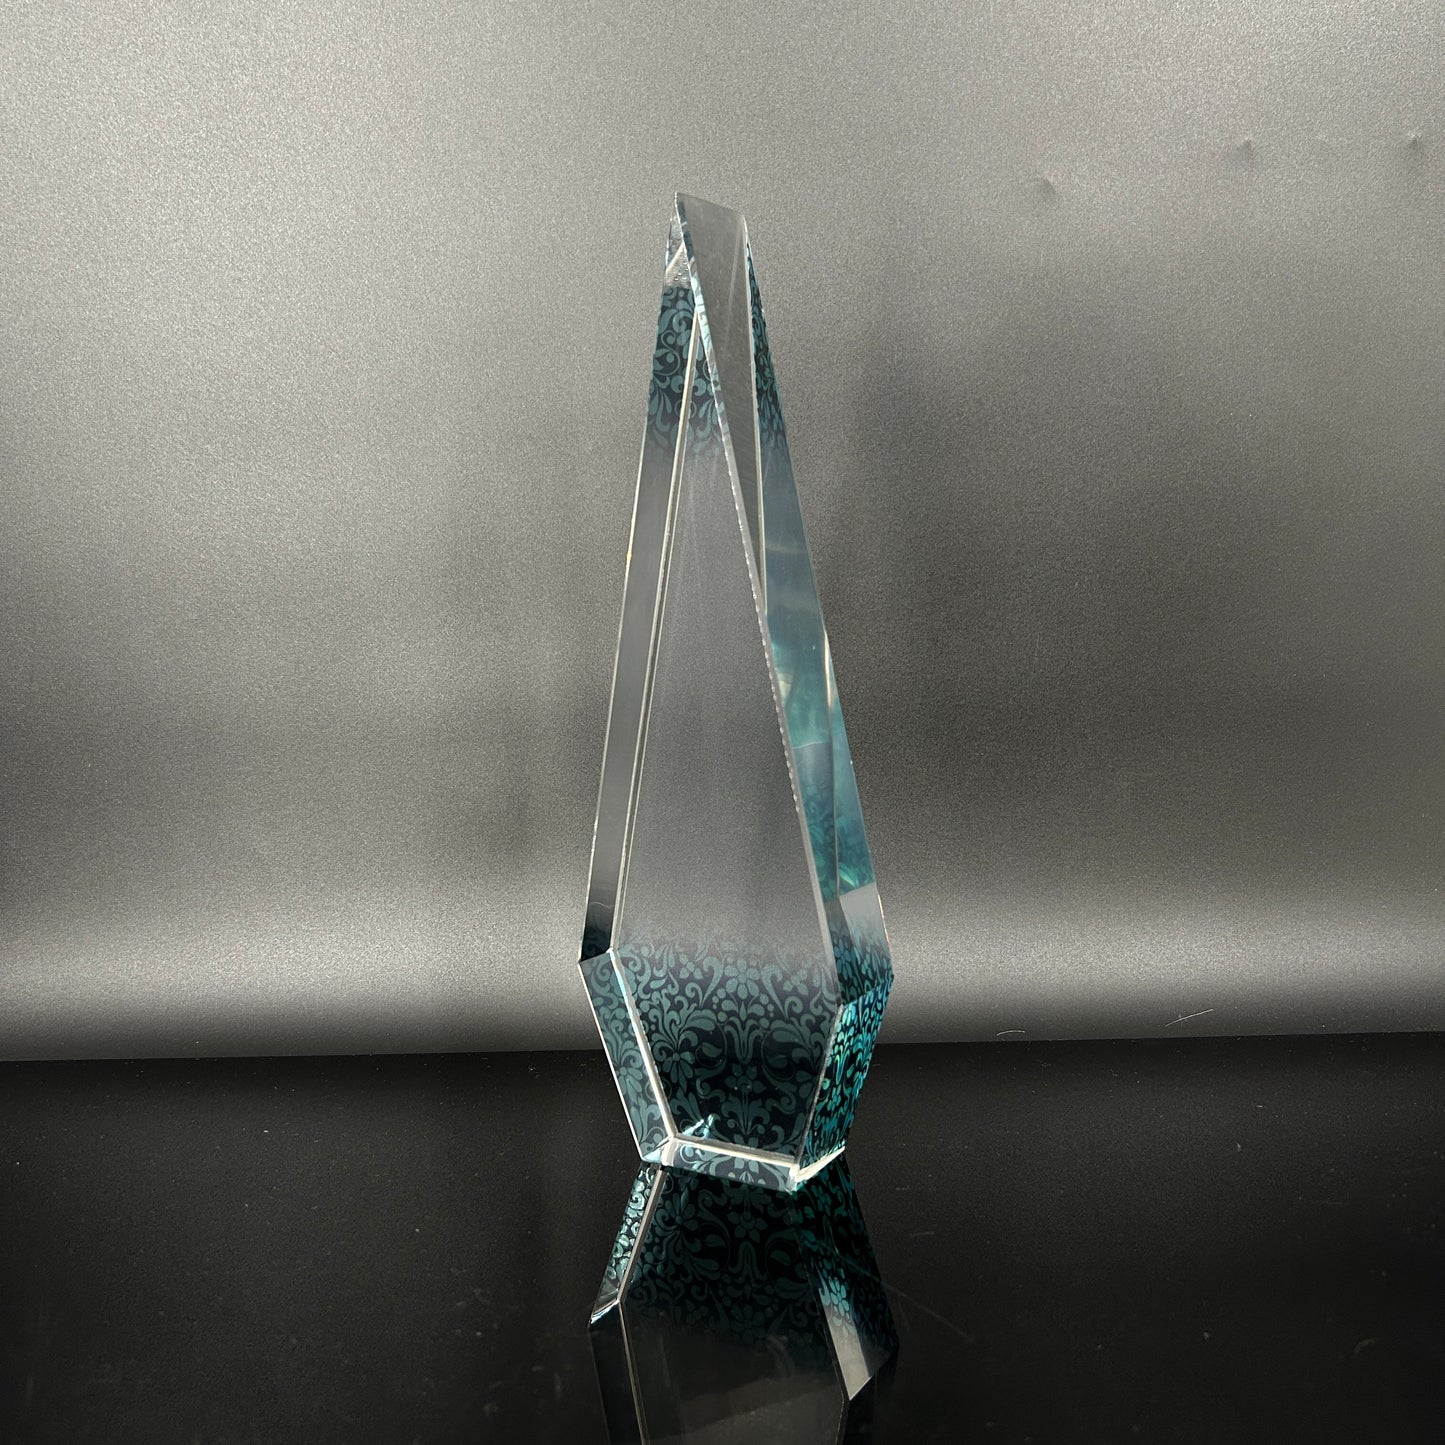 Lumina Pointed Elegance Award